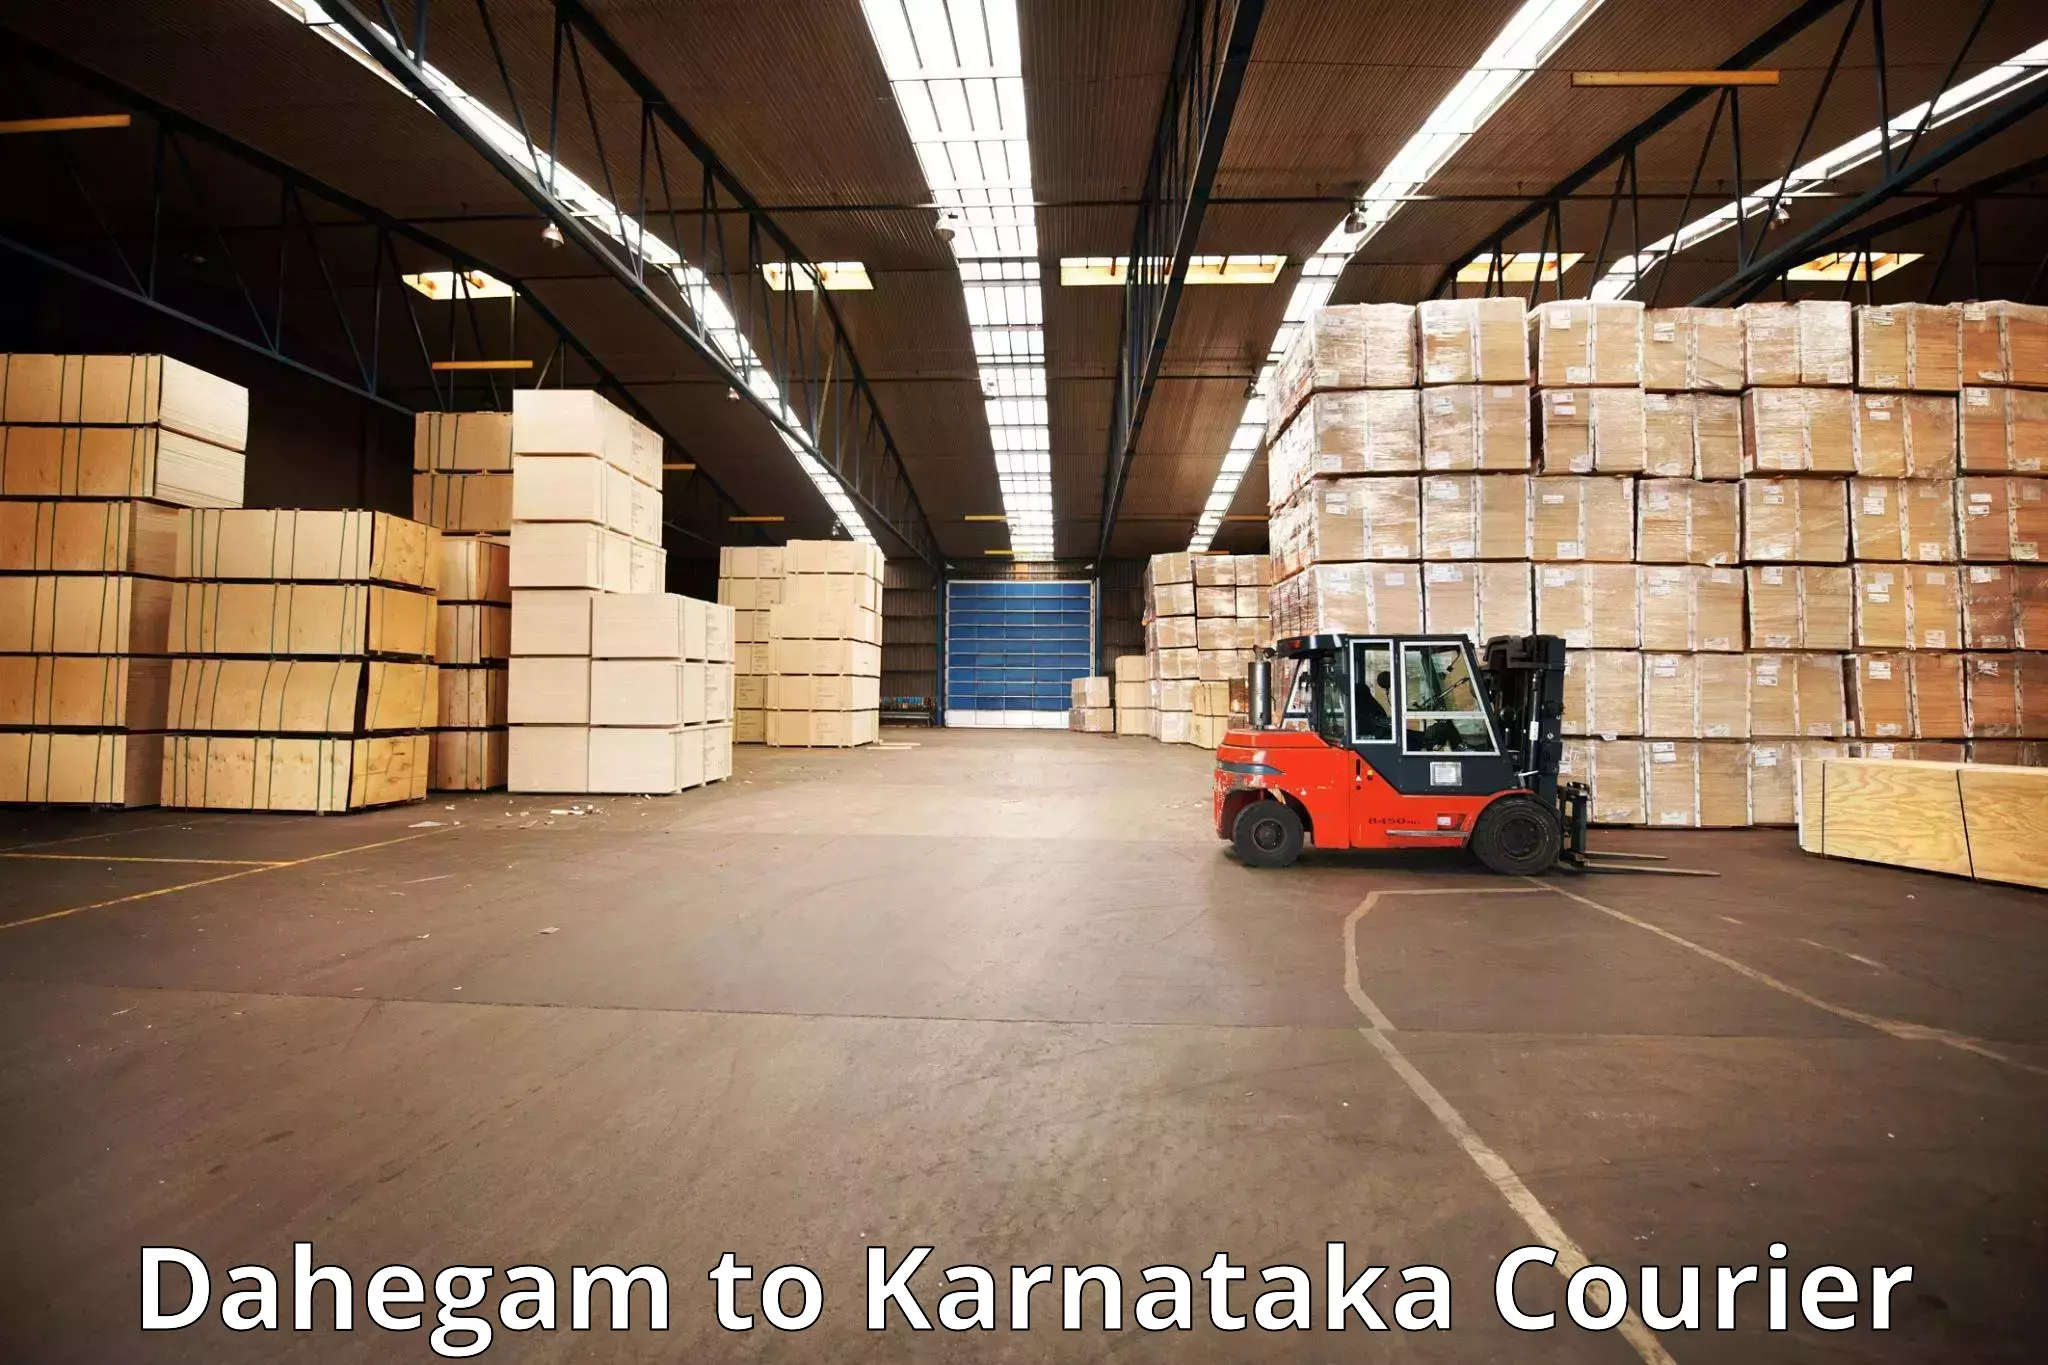 Baggage transport scheduler Dahegam to Karnataka